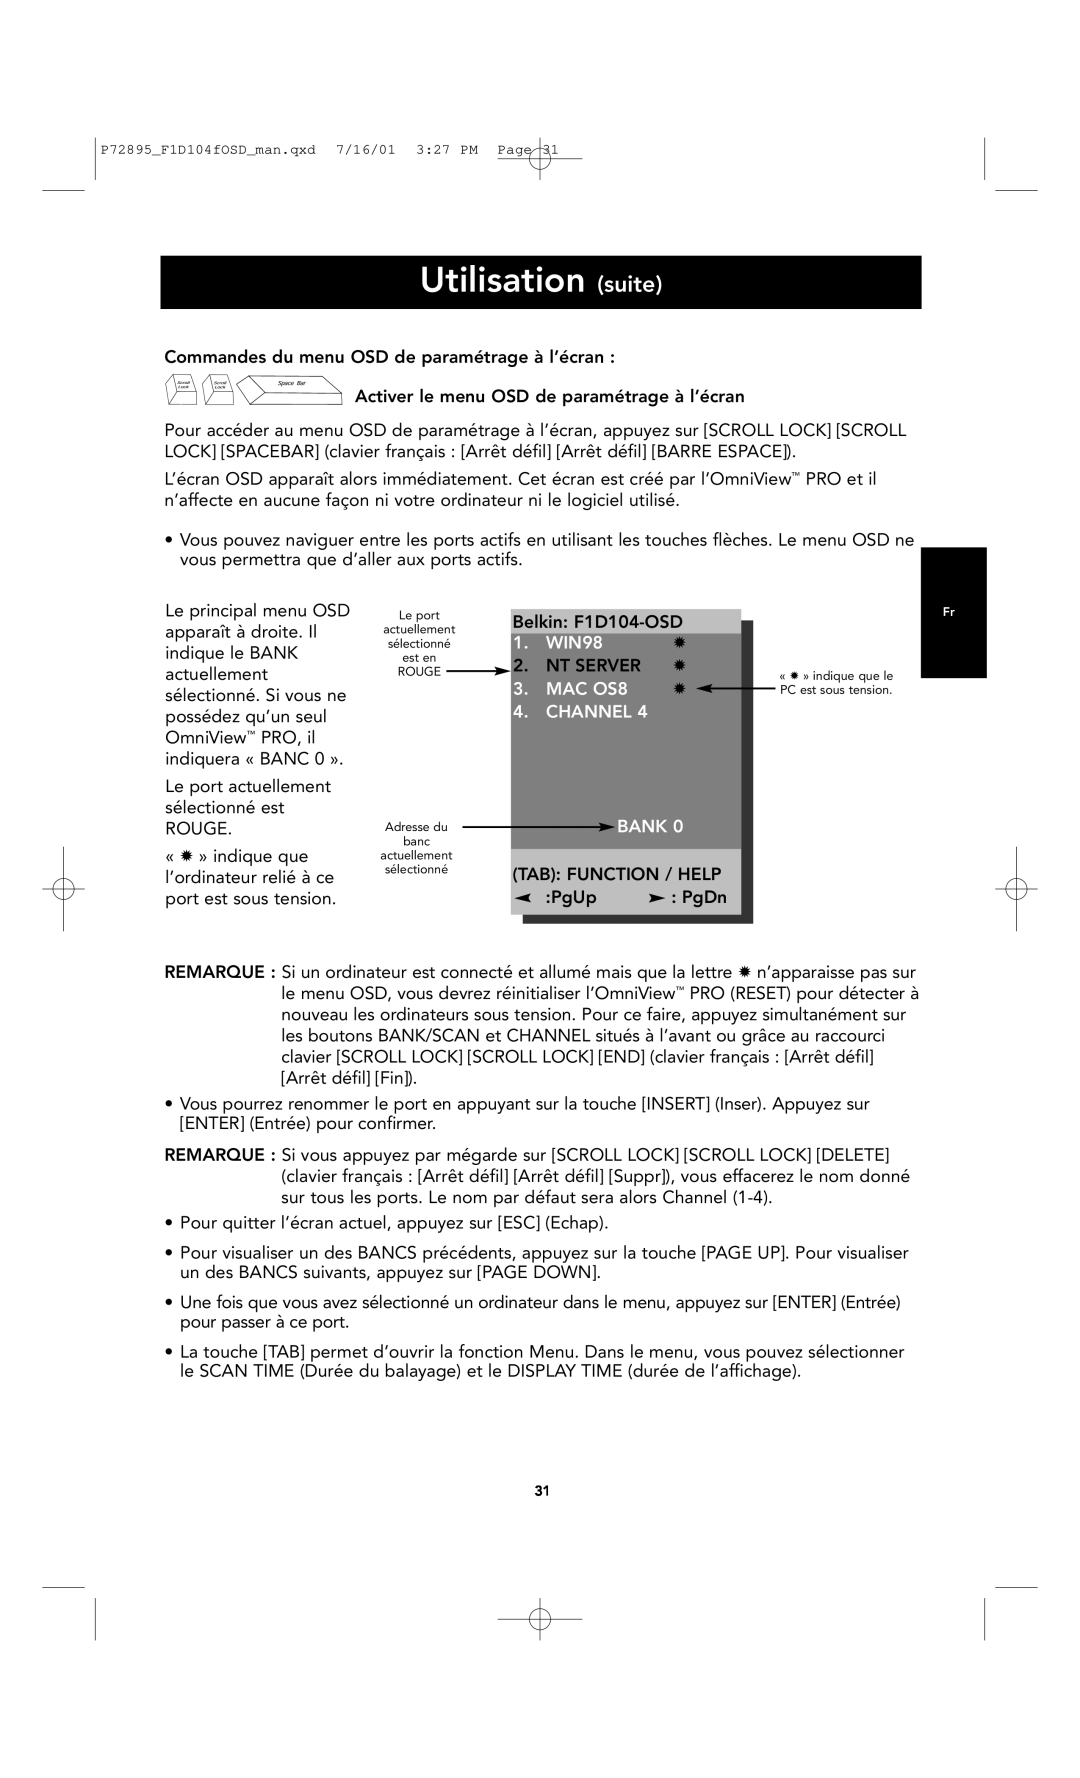 Belkin F1D104-OSD user manual Utilisation suite, WIN98, MAC OS8, Channel, Bank 